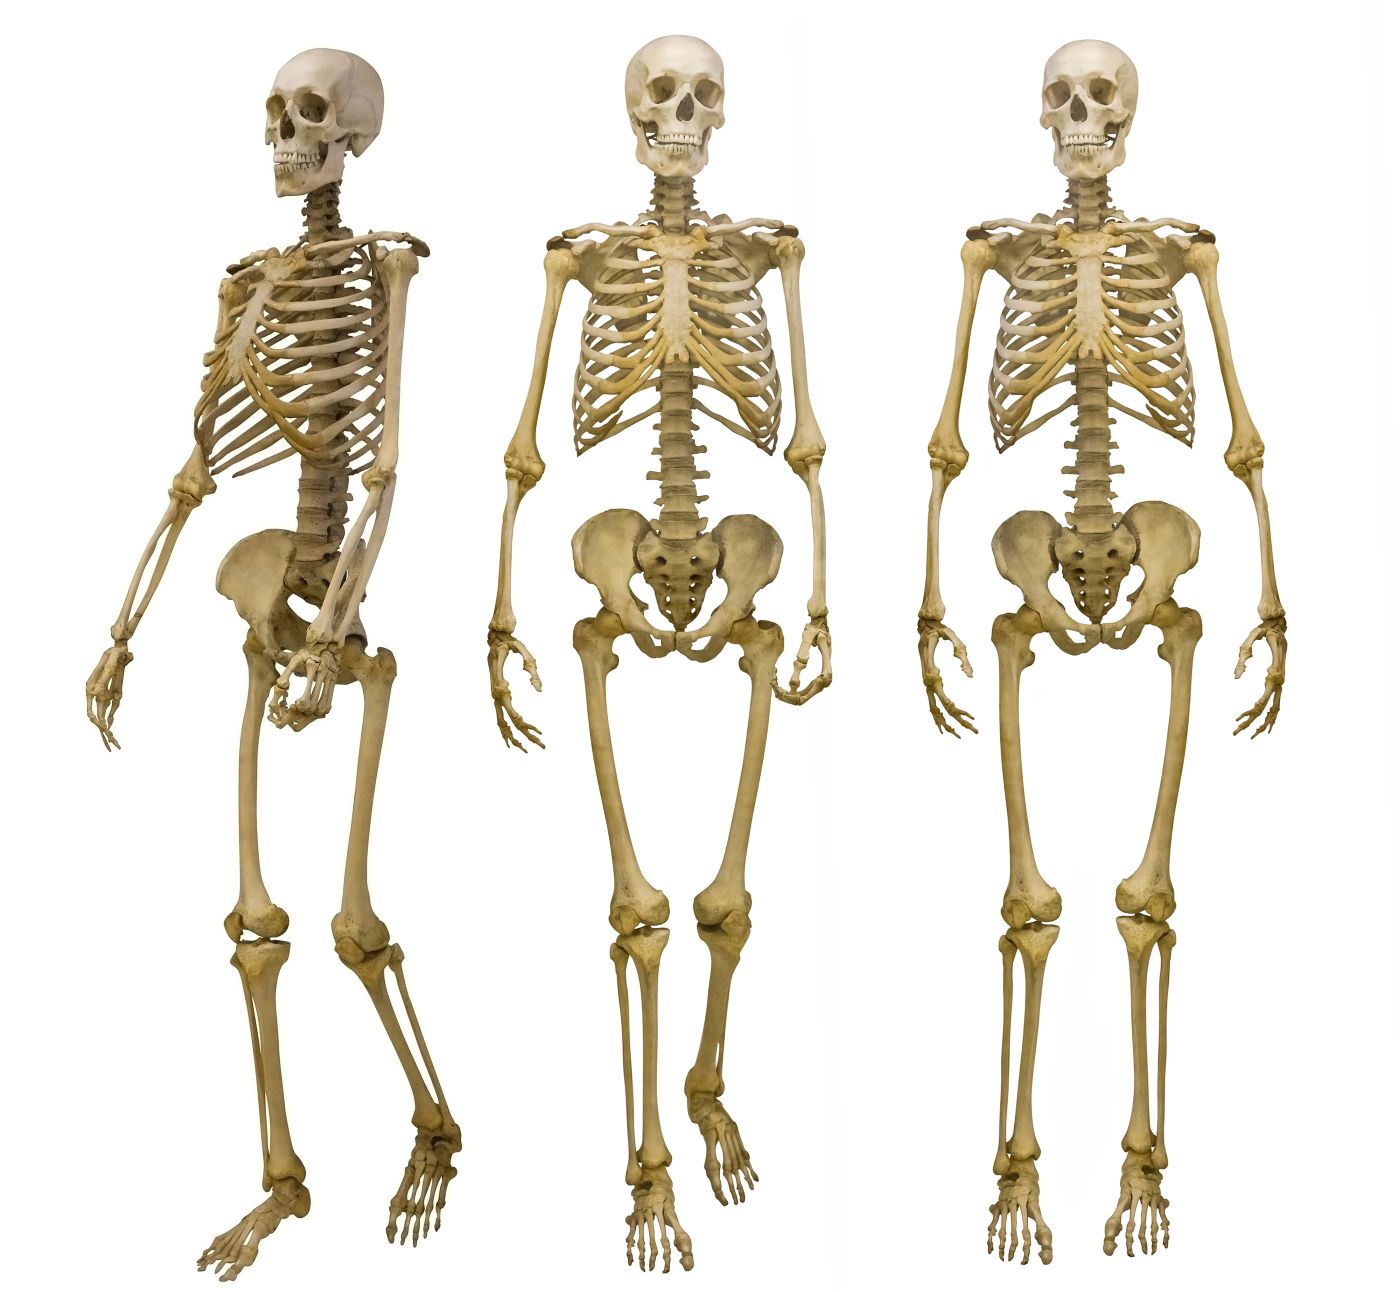 Între 30 și 50% din proporțiile scheletului uman sunt ereditare (studiu)